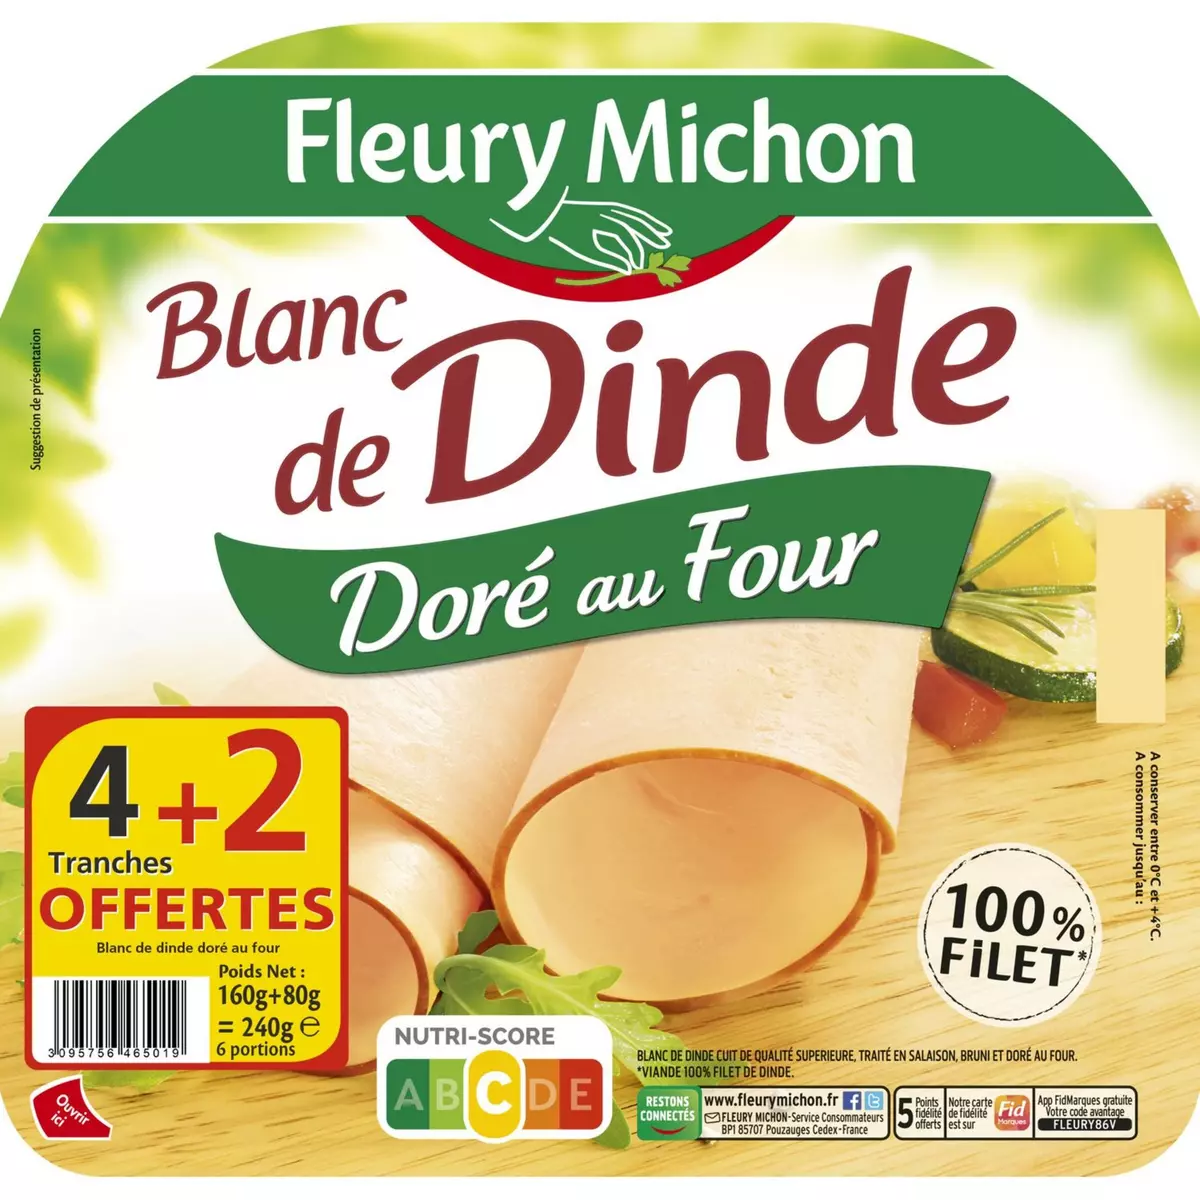 FLEURY MICHON Blanc de dinde doré au four 4+2 tranches 240g